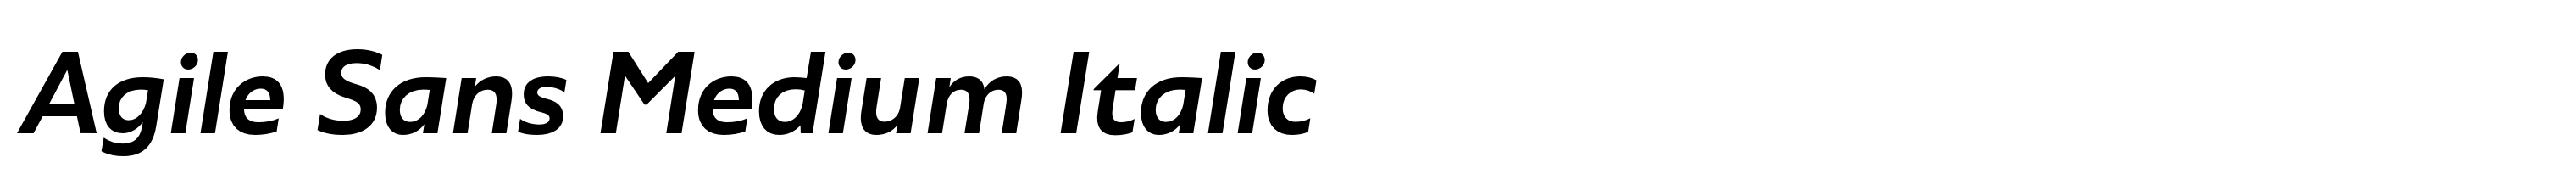 Agile Sans Medium Italic